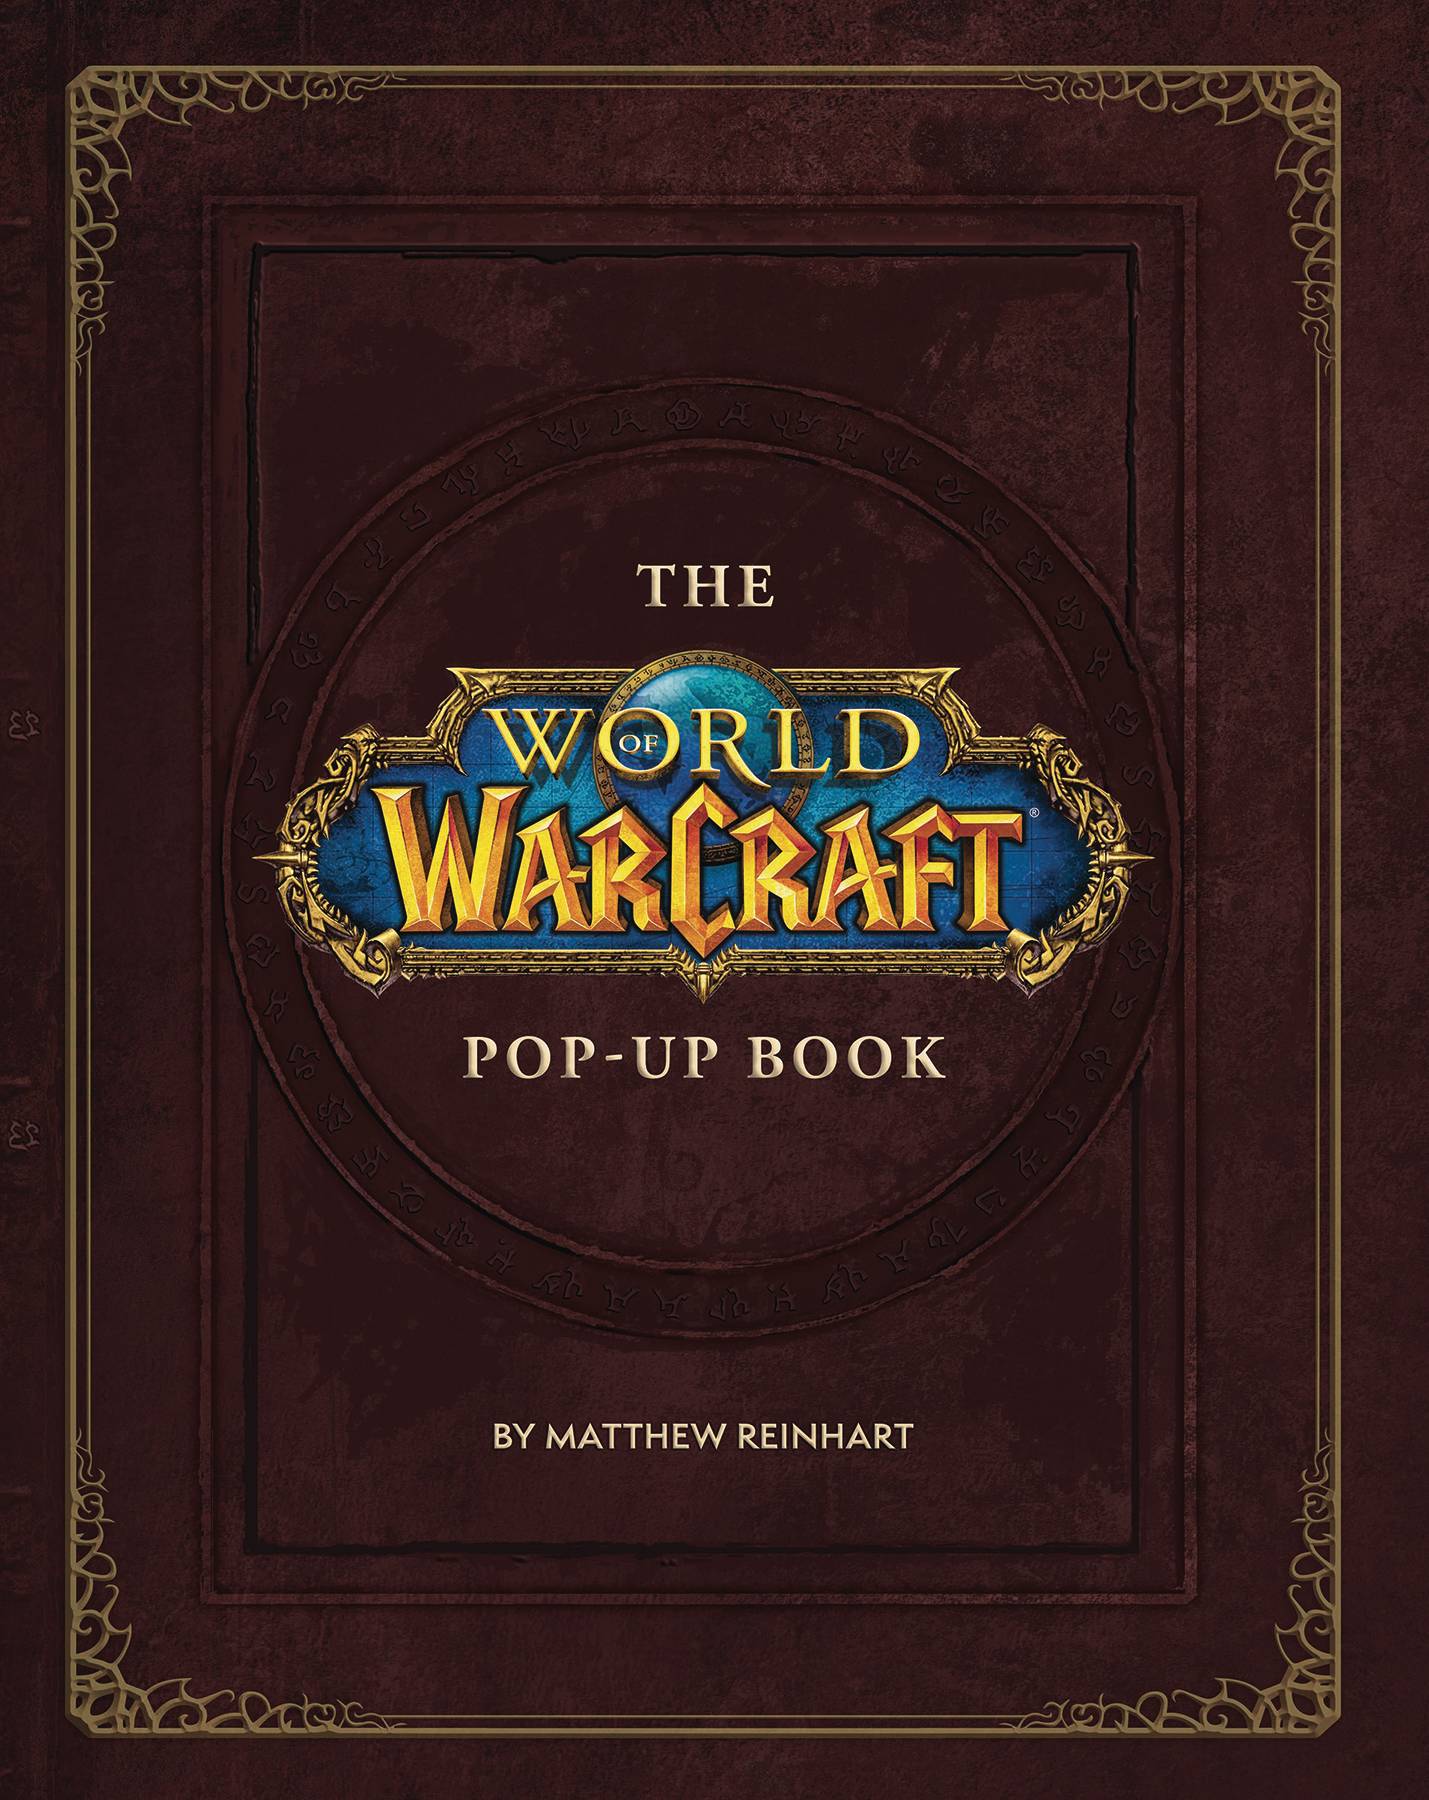 WORLD OF WARCRAFT POP UP BOOK